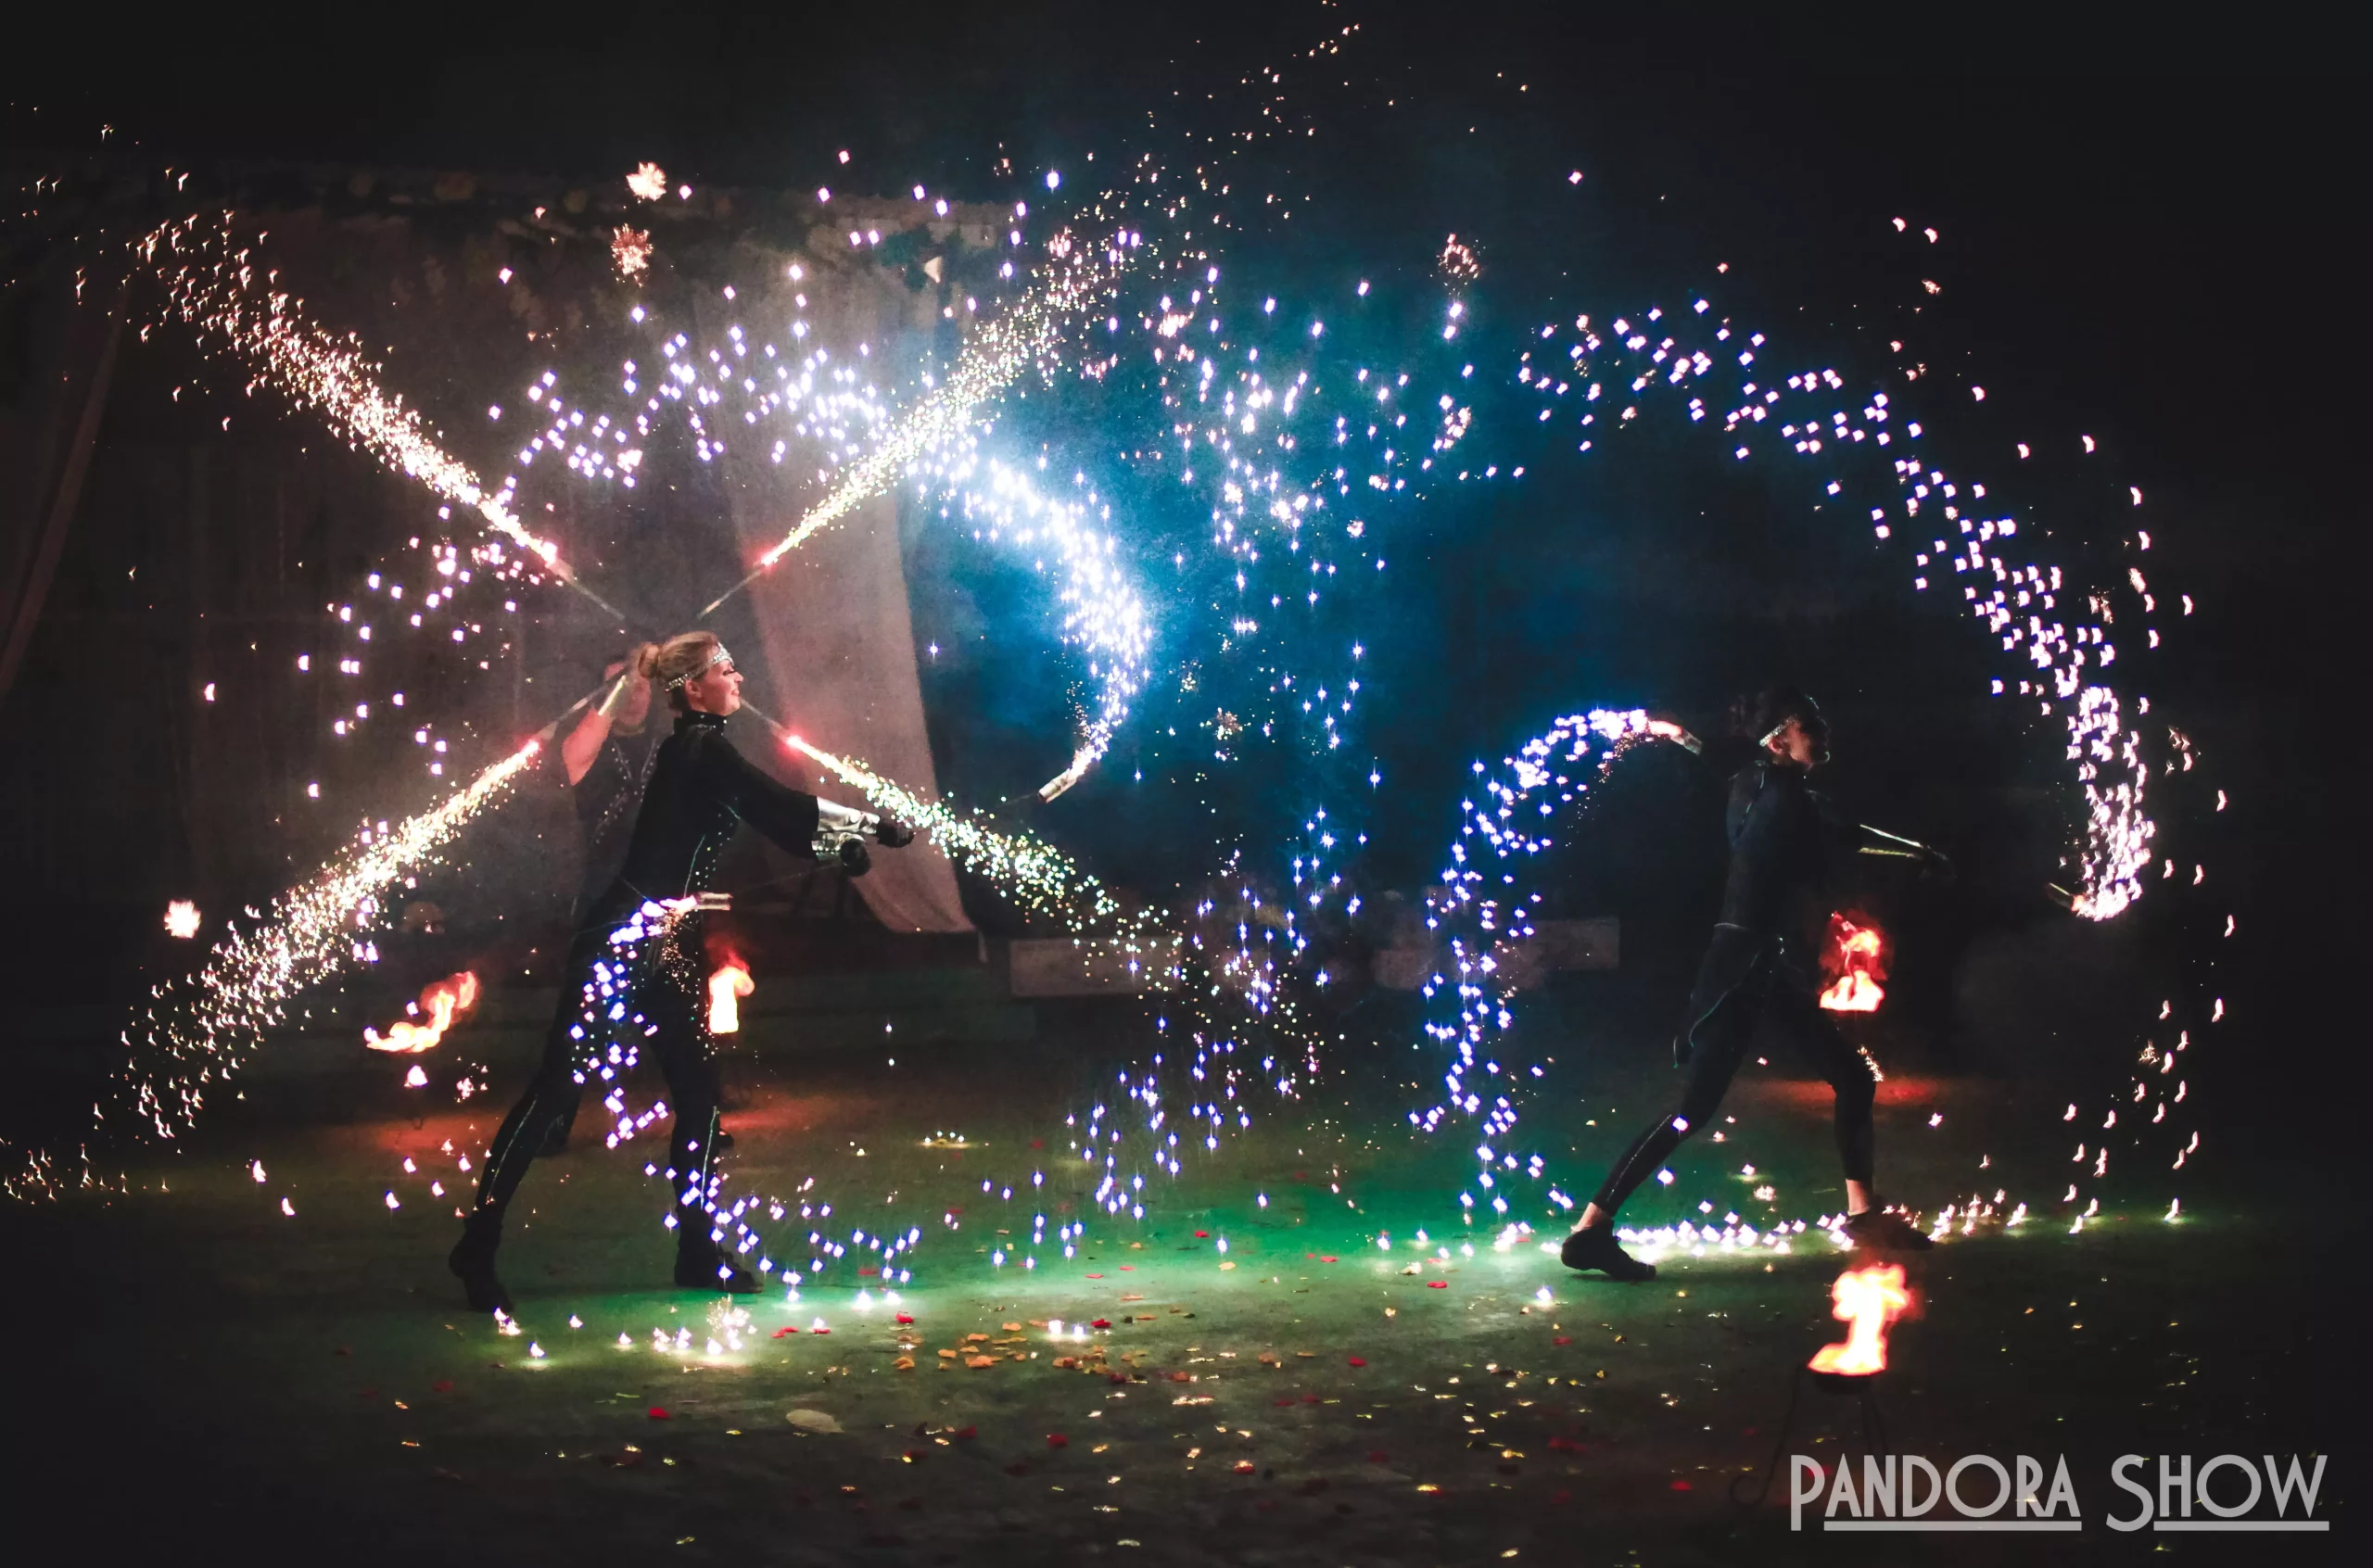 огненное шоу со спецэффектами на свадьбу | Pandora Show